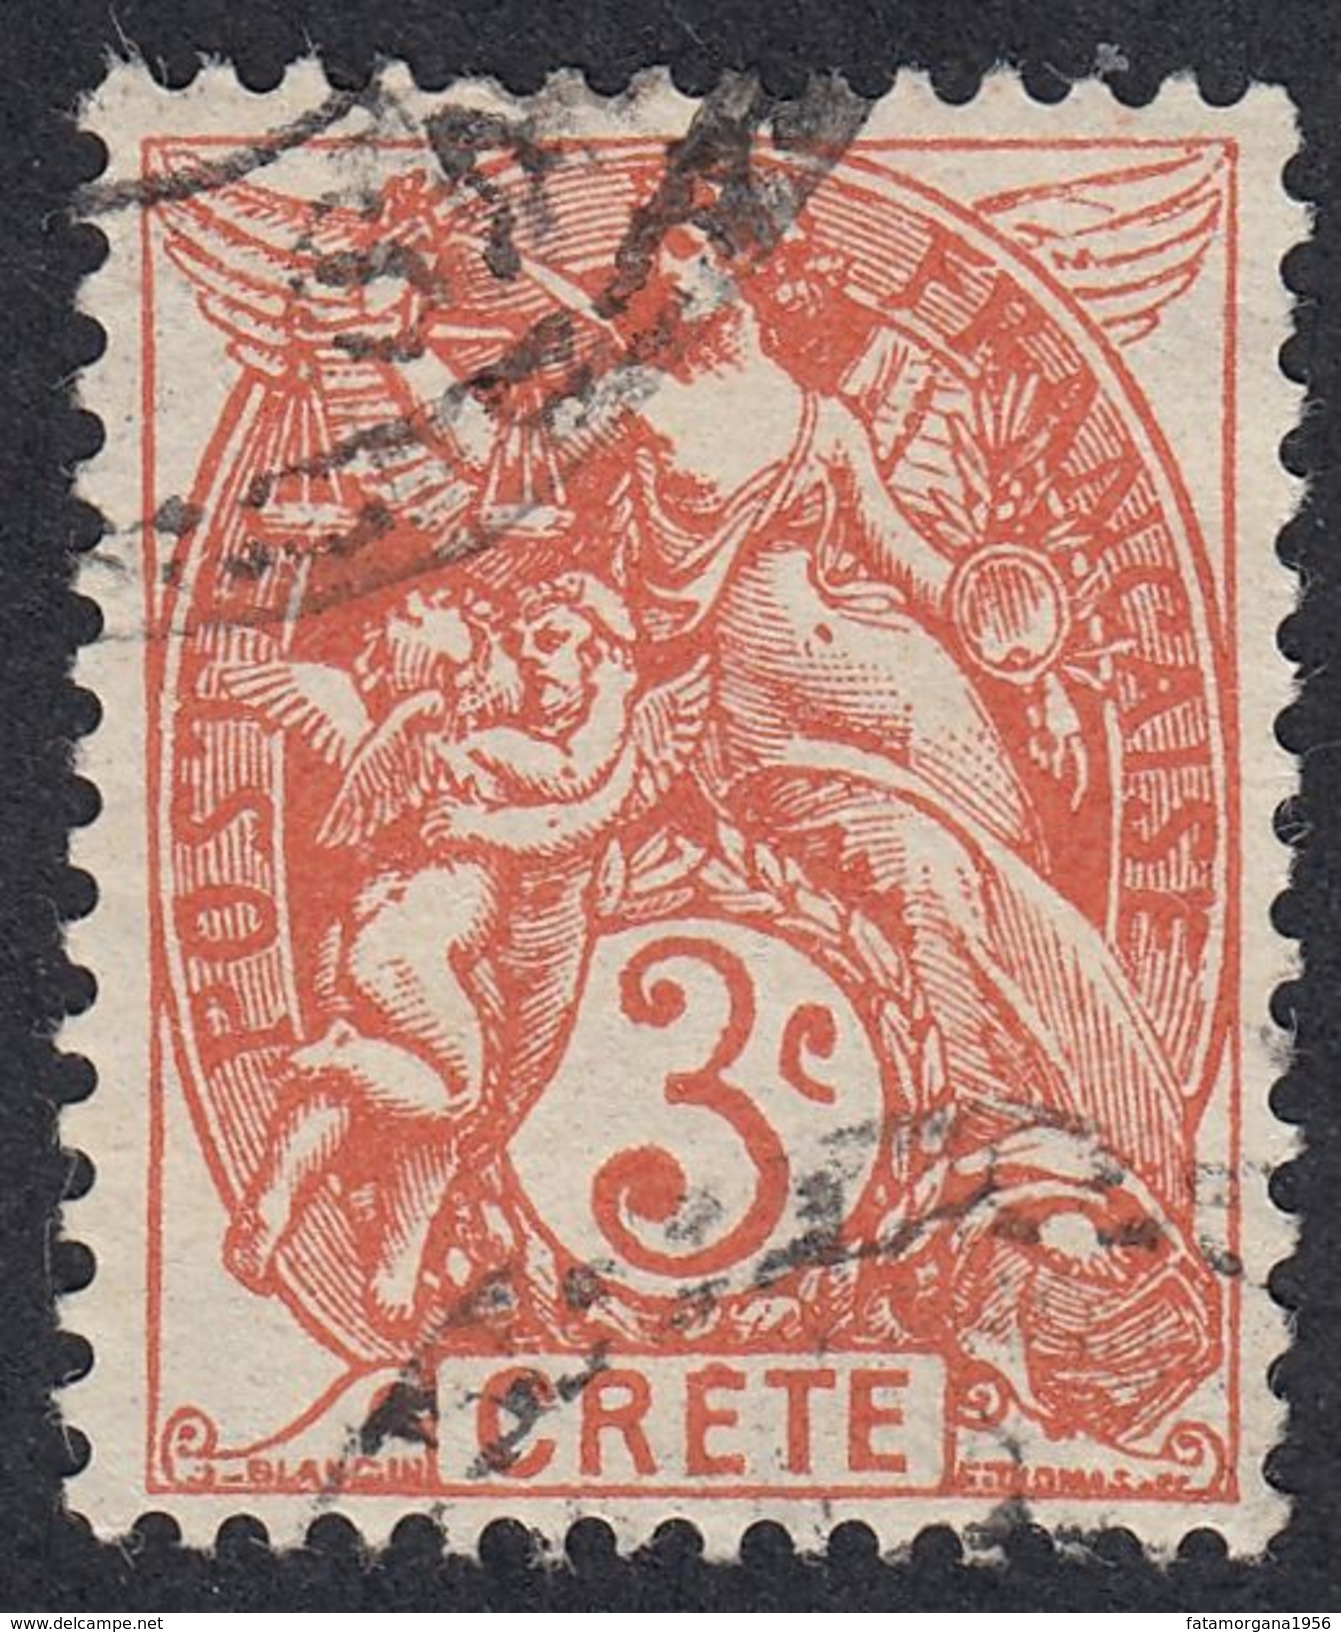 FRANCE Francia Frankreich (colonie) - 1902/1903 - Crète (Creta) - Yvert 3, Obliterato, 3 Cent. - Used Stamps